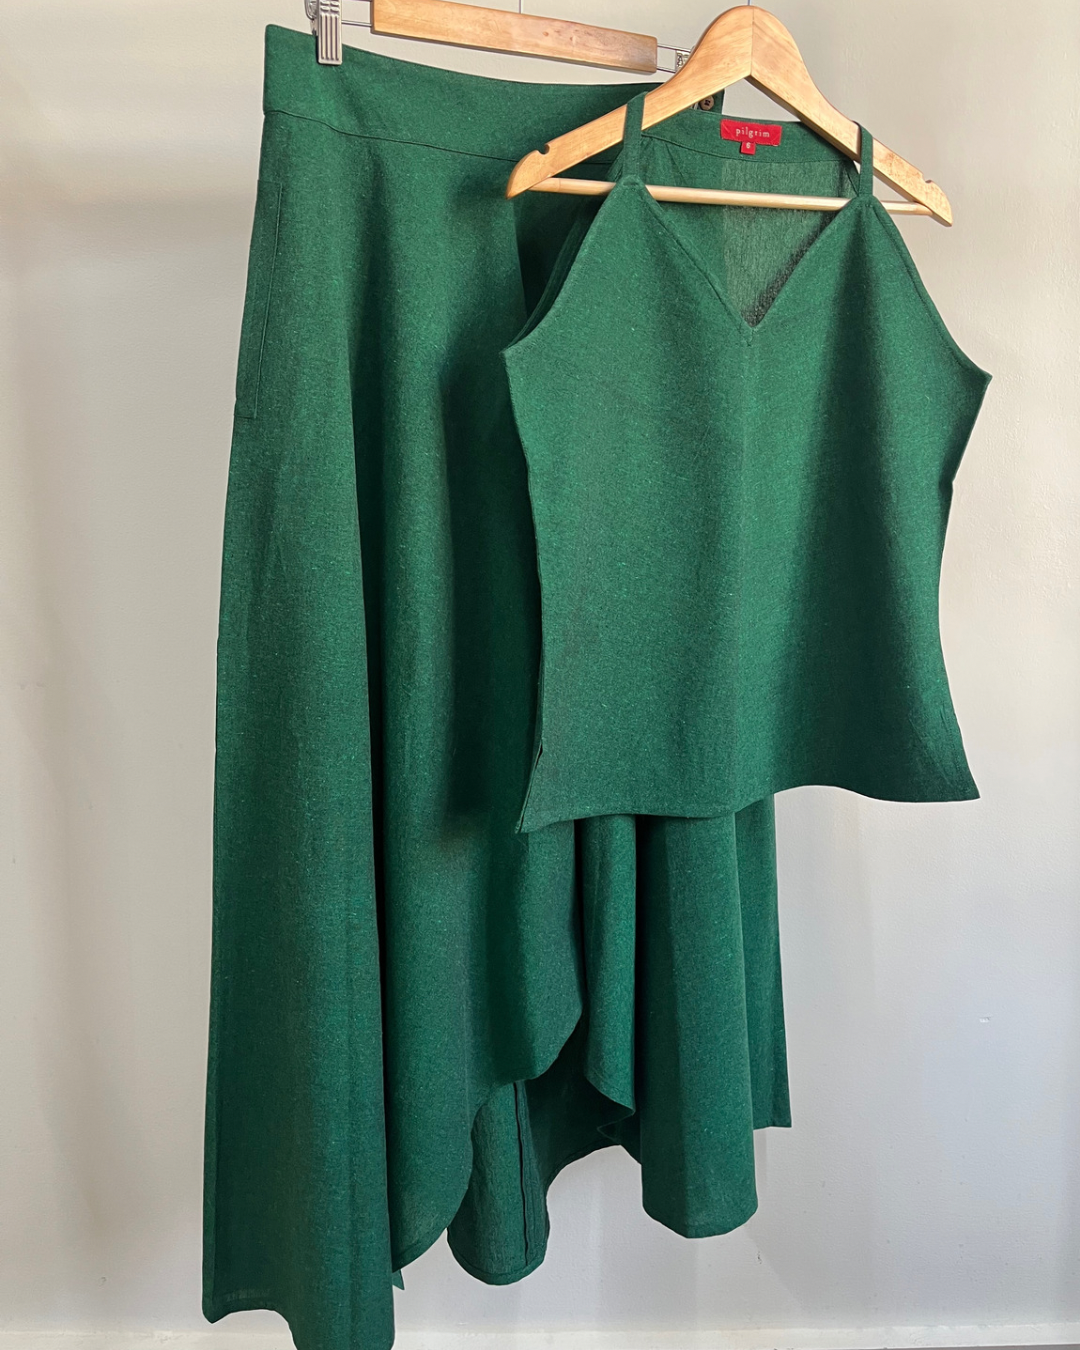 Adhira Skirt - Amazon green cotton